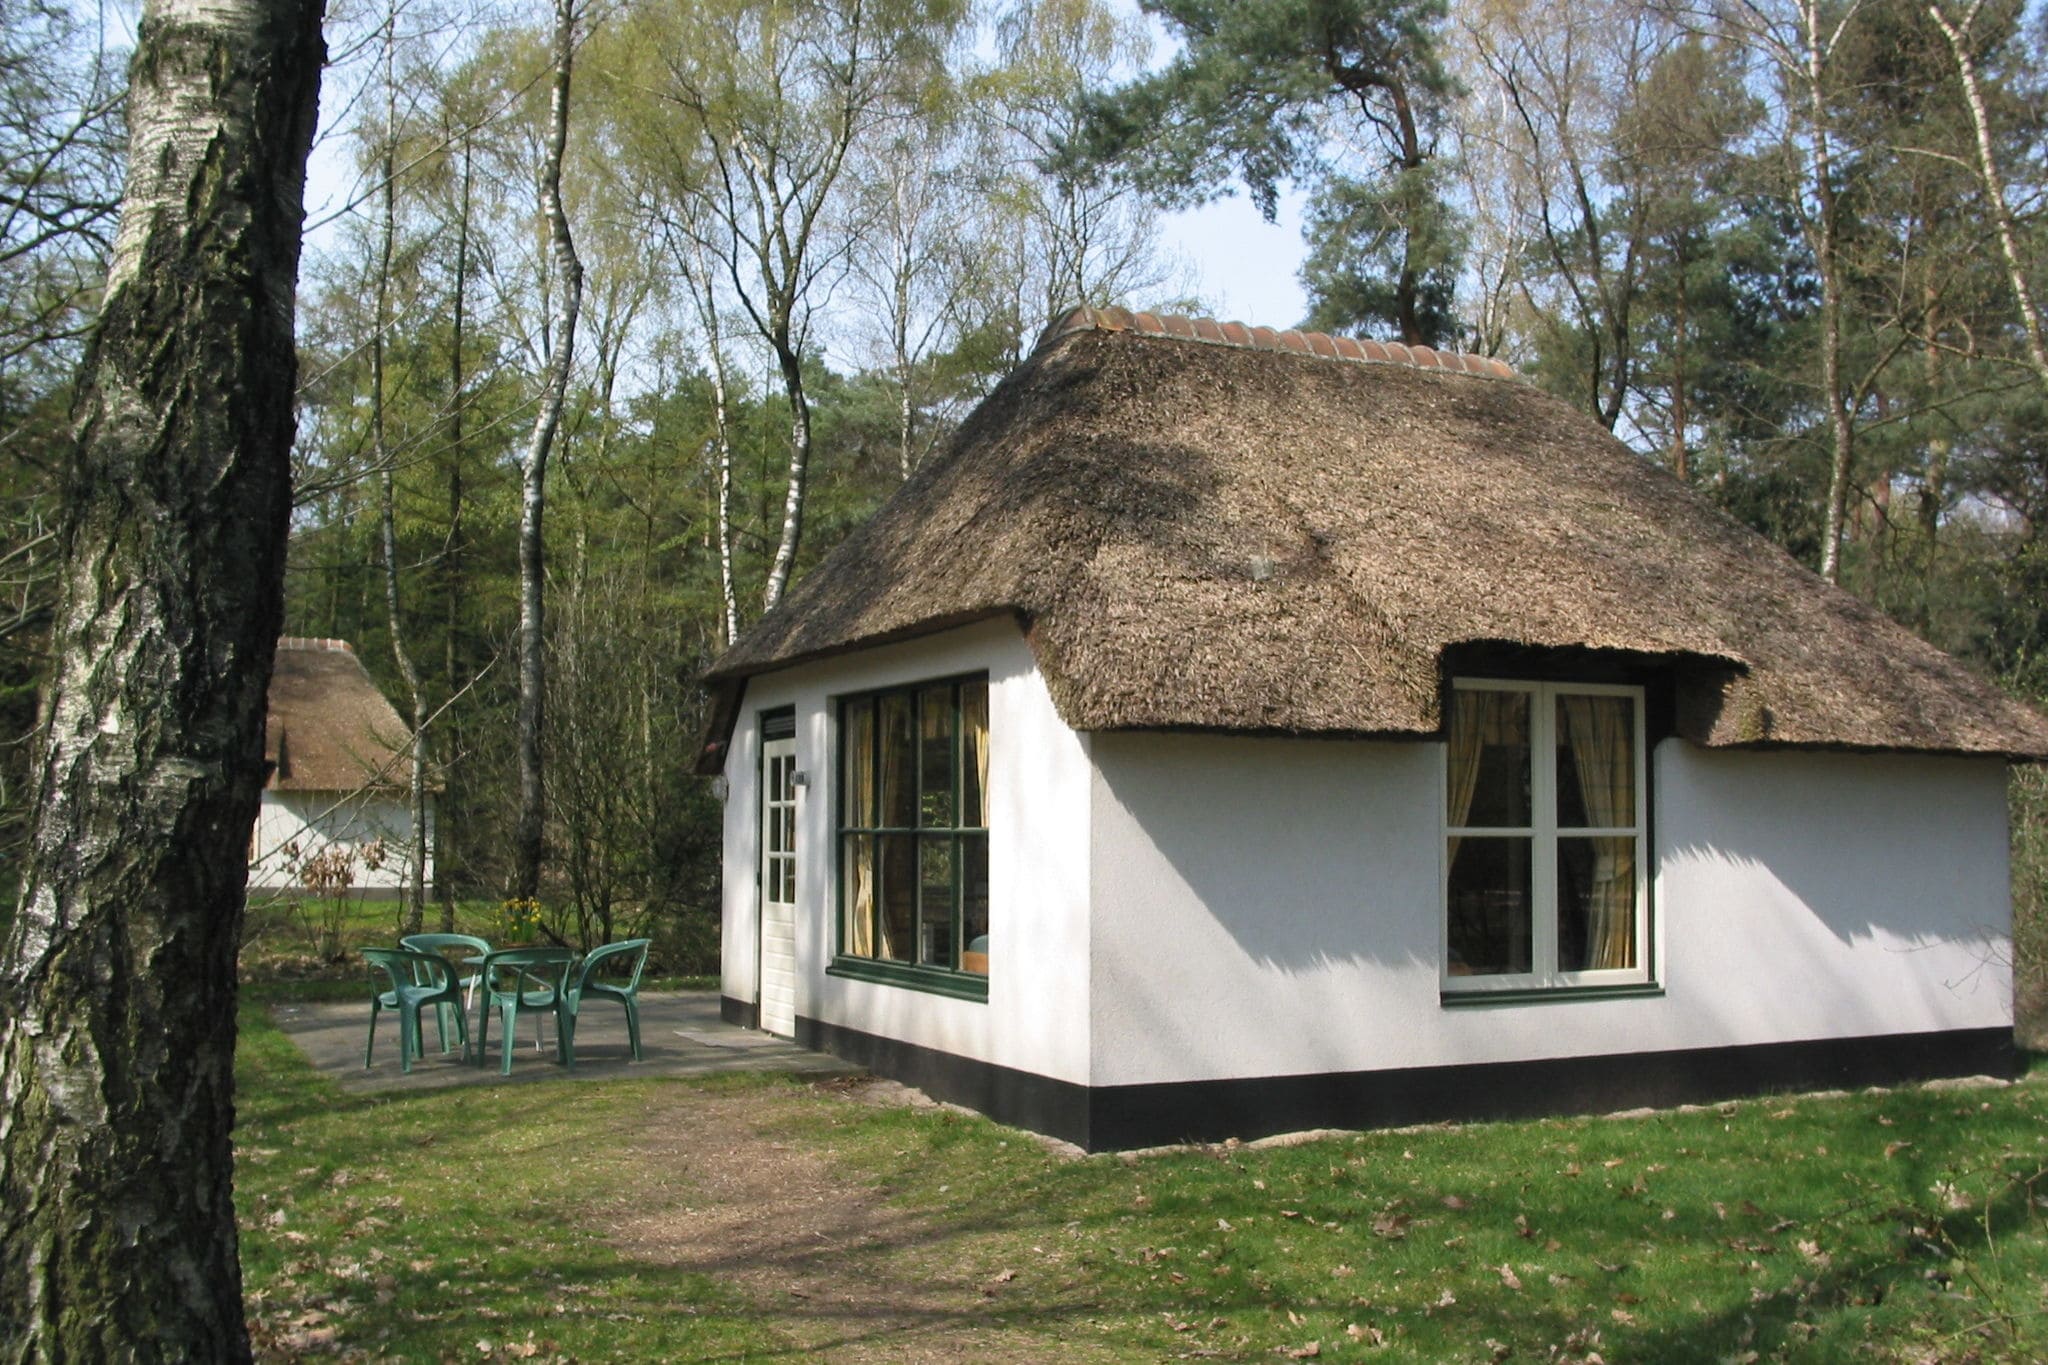 Verzorgd ingerichte bungalow, gelegen midden in de natuur